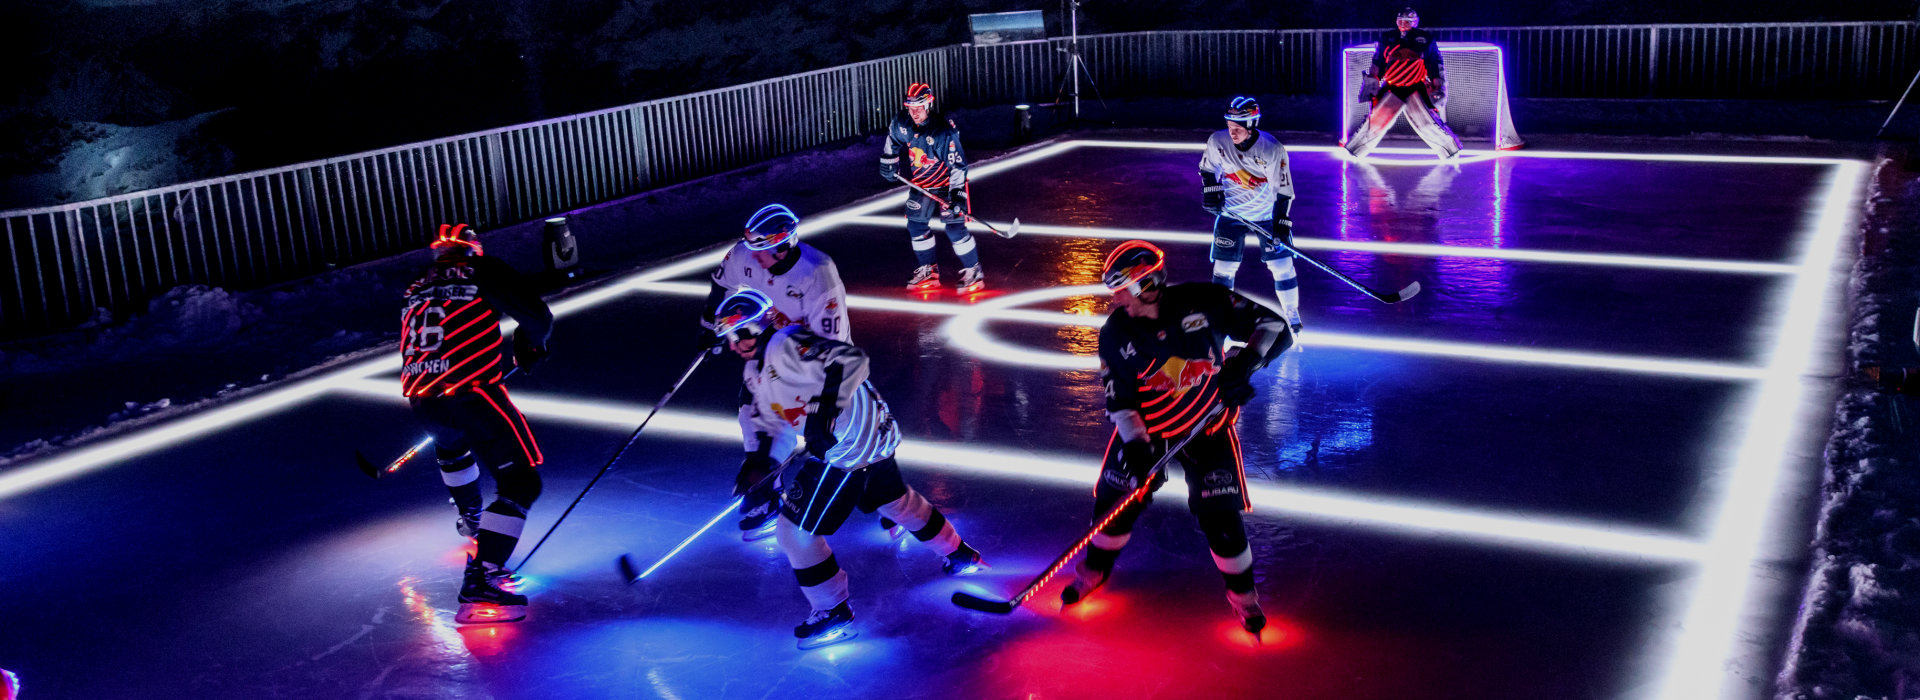 应用于冰球慕尼黑EHC红牛队运动员服装中的纺织照明：实现卓越运动和非凡照明的强强联合 